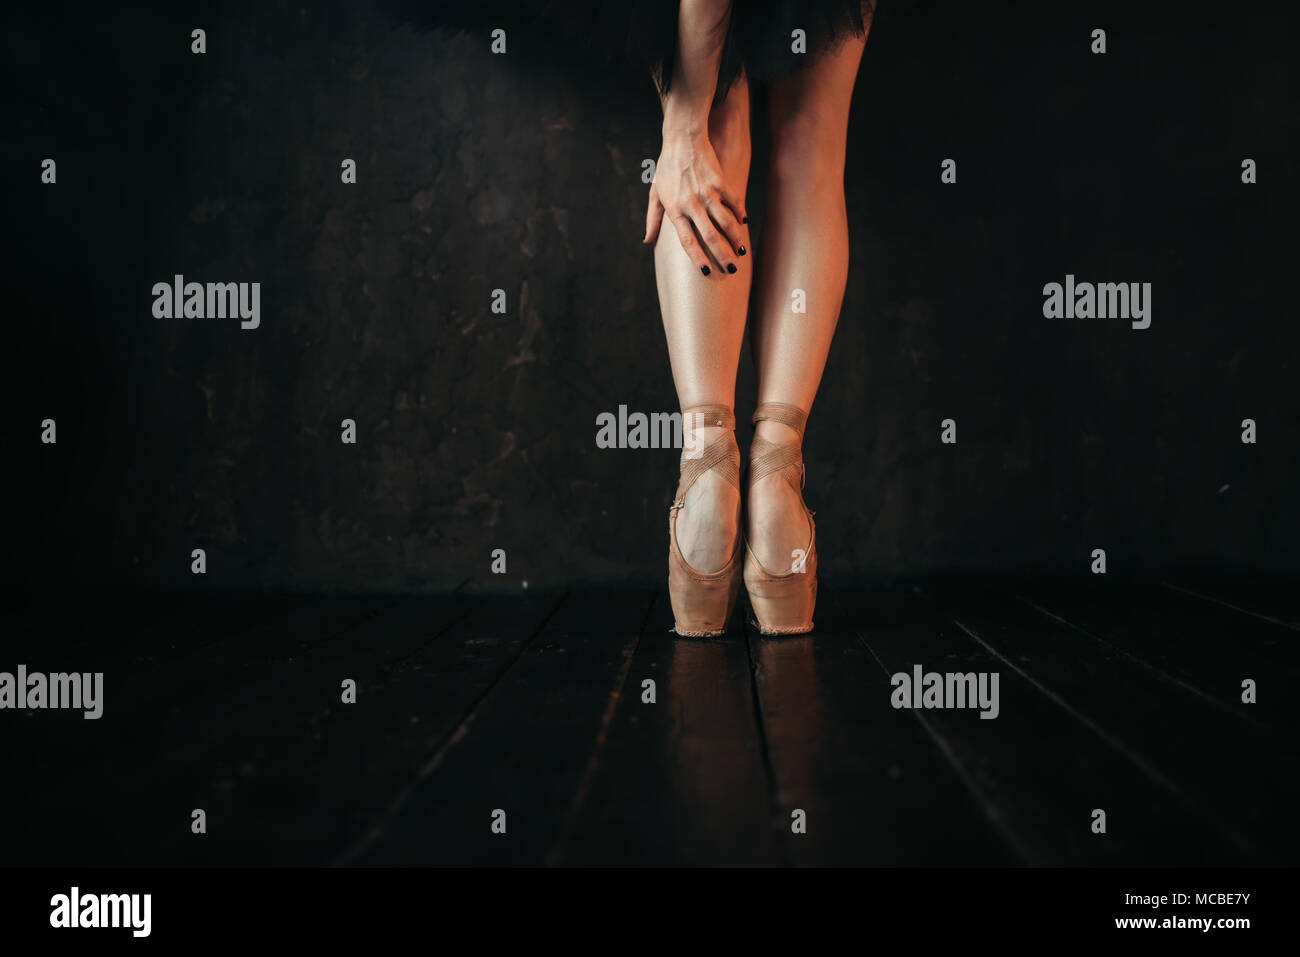 Ballet dancer legs in pointes, black wooden floor Stock Photo